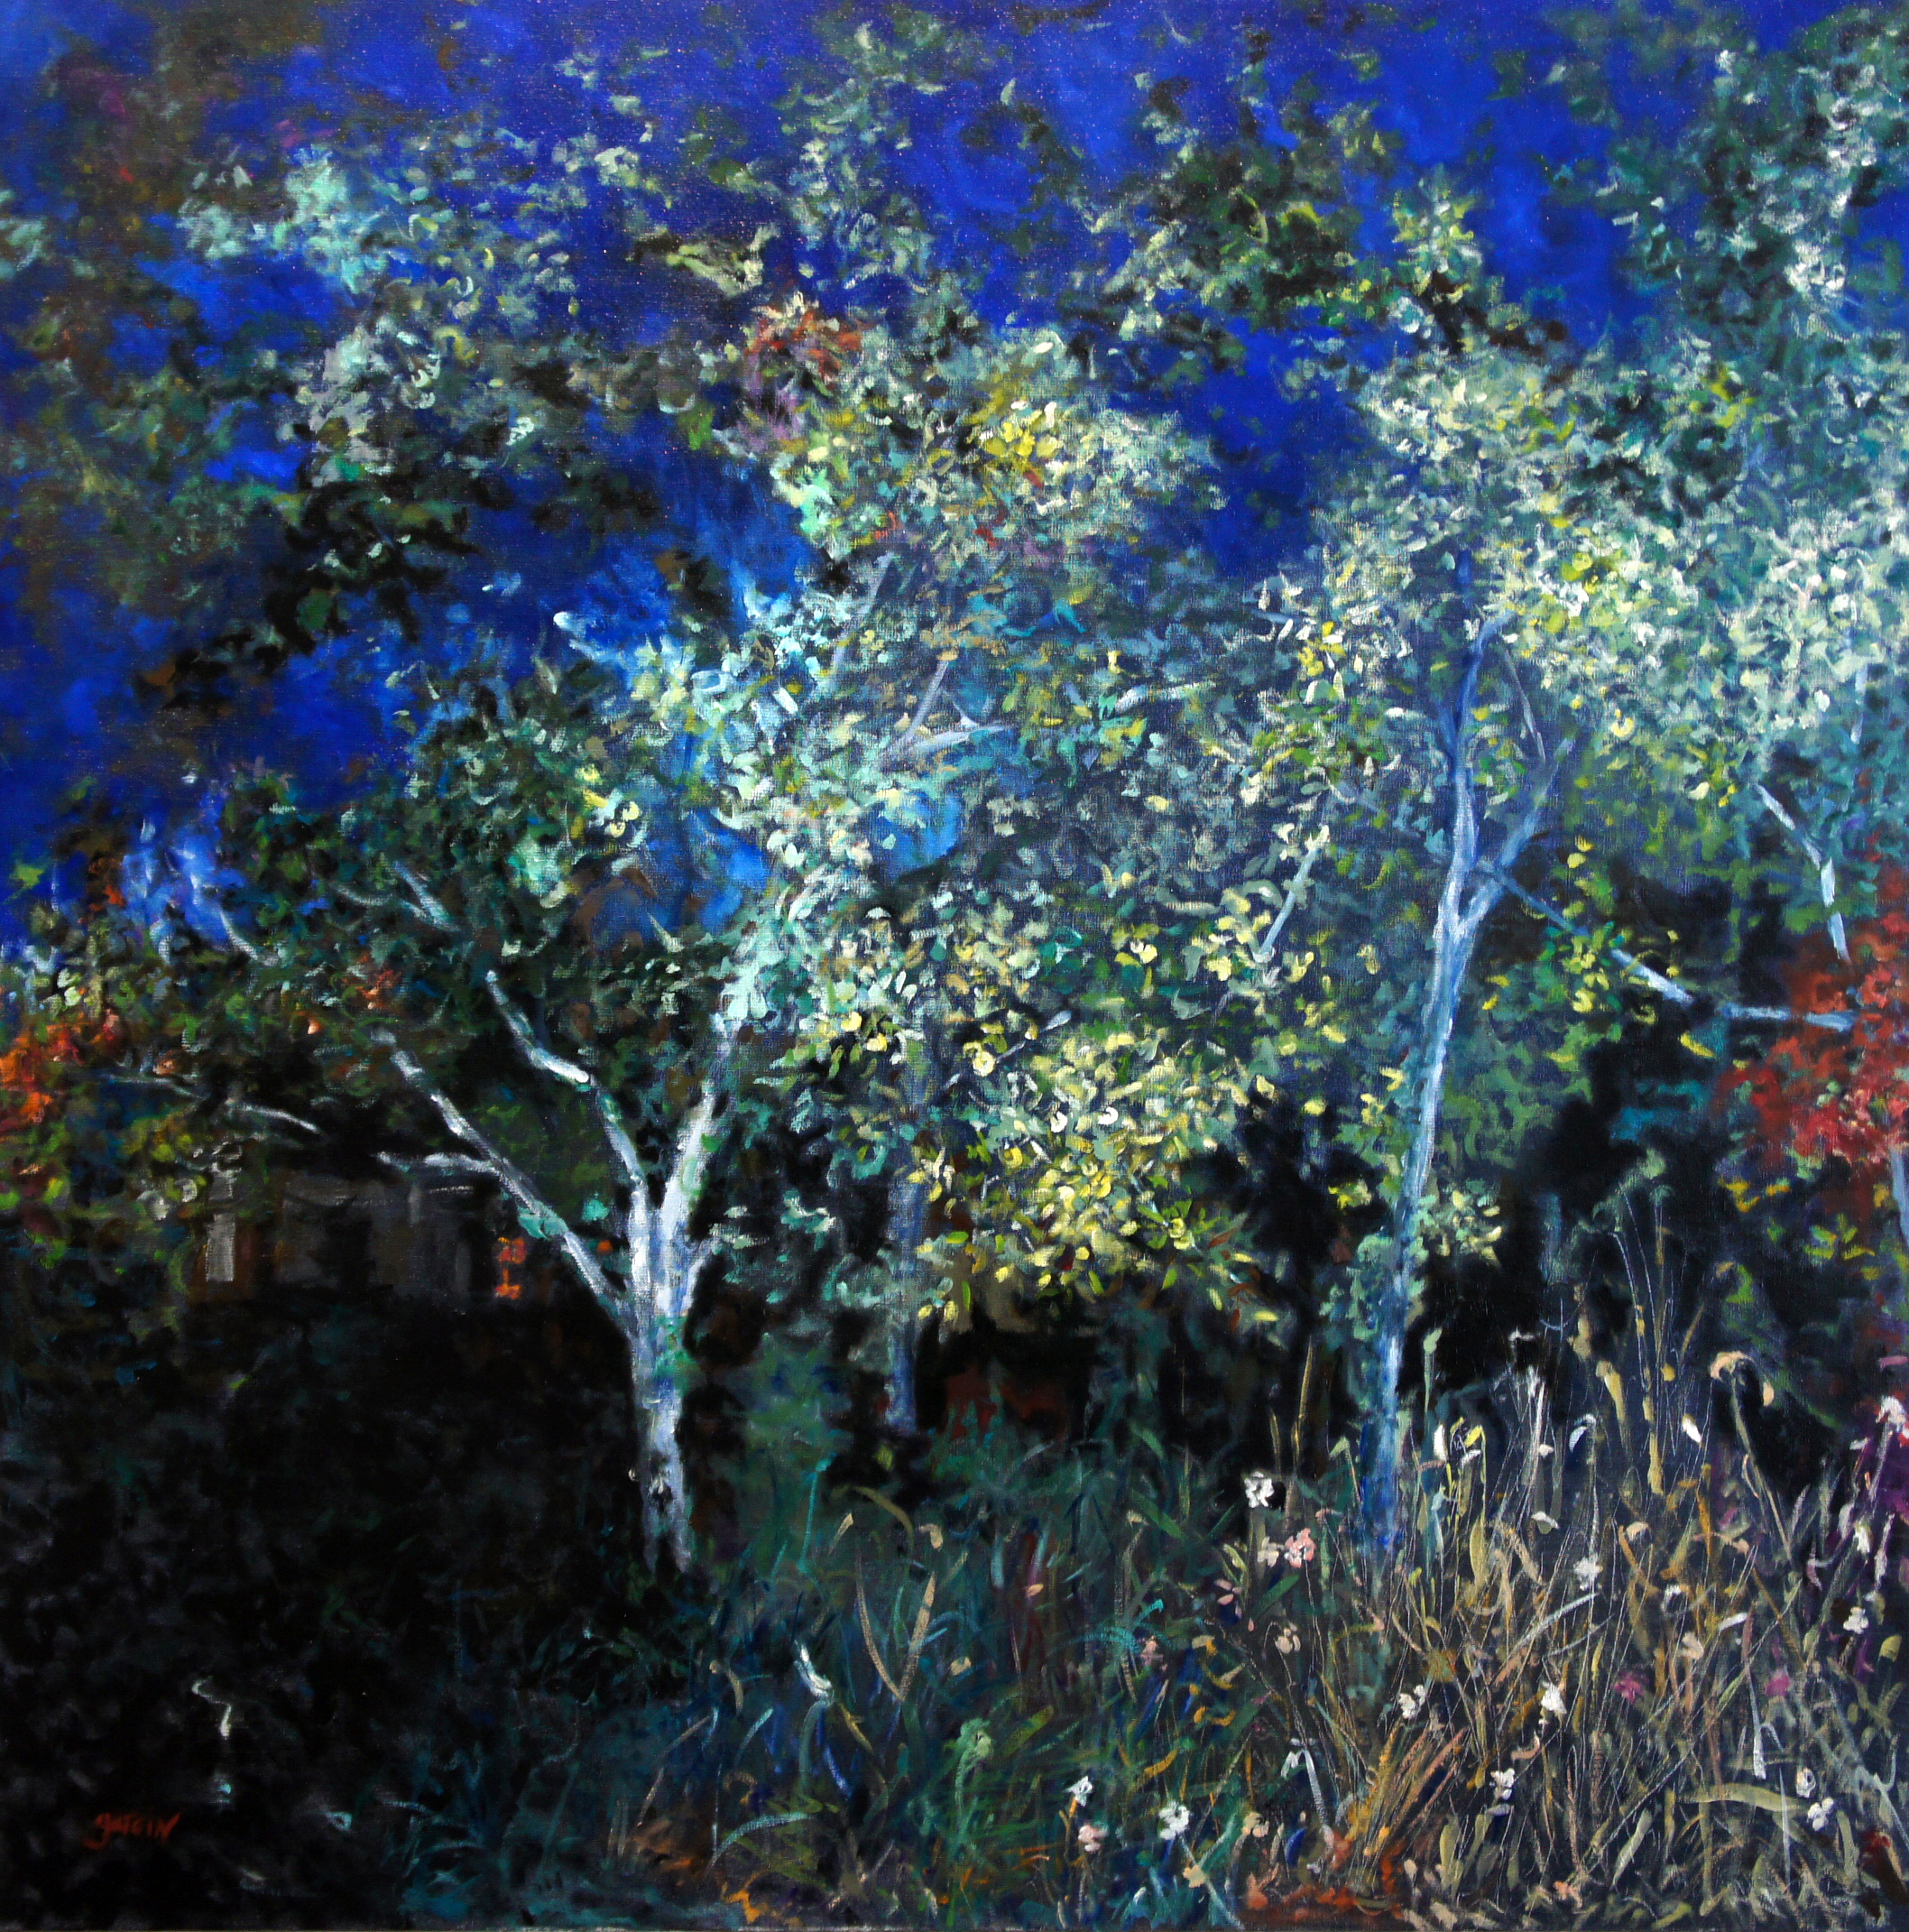 Ce tableau fait partie d'une série, sur l'heure bleue cette heure au moment où le jour laisse la place à la nuit. pommiers, graminés, flores, apparaît alors un paysage au clair de lune.